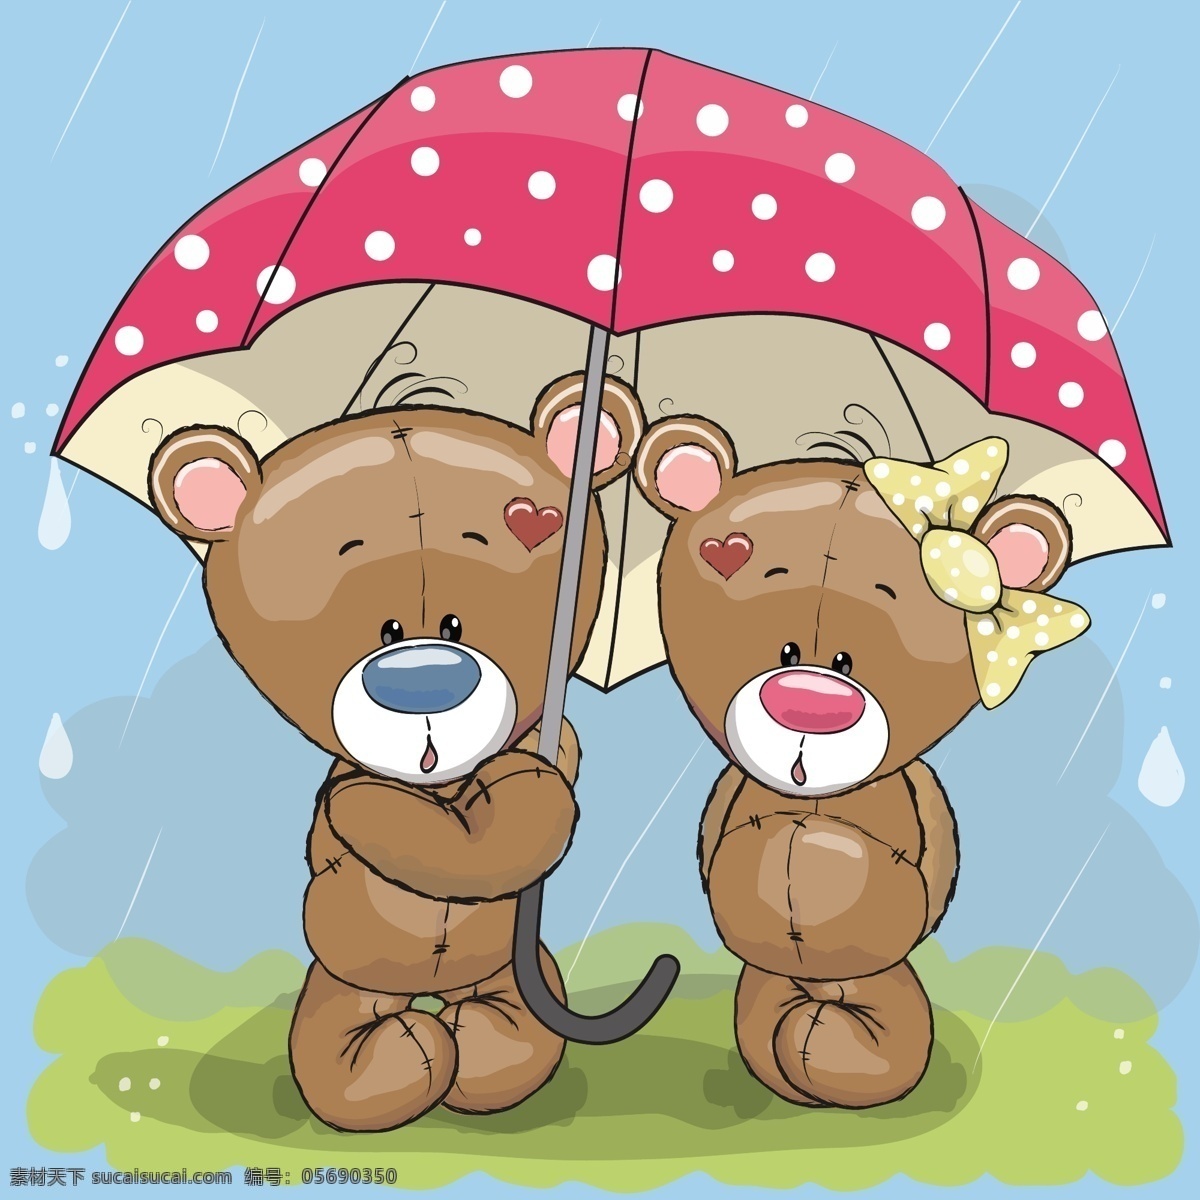 雨伞 下 躲雨 两 只 小 熊 雨伞下 两只小熊